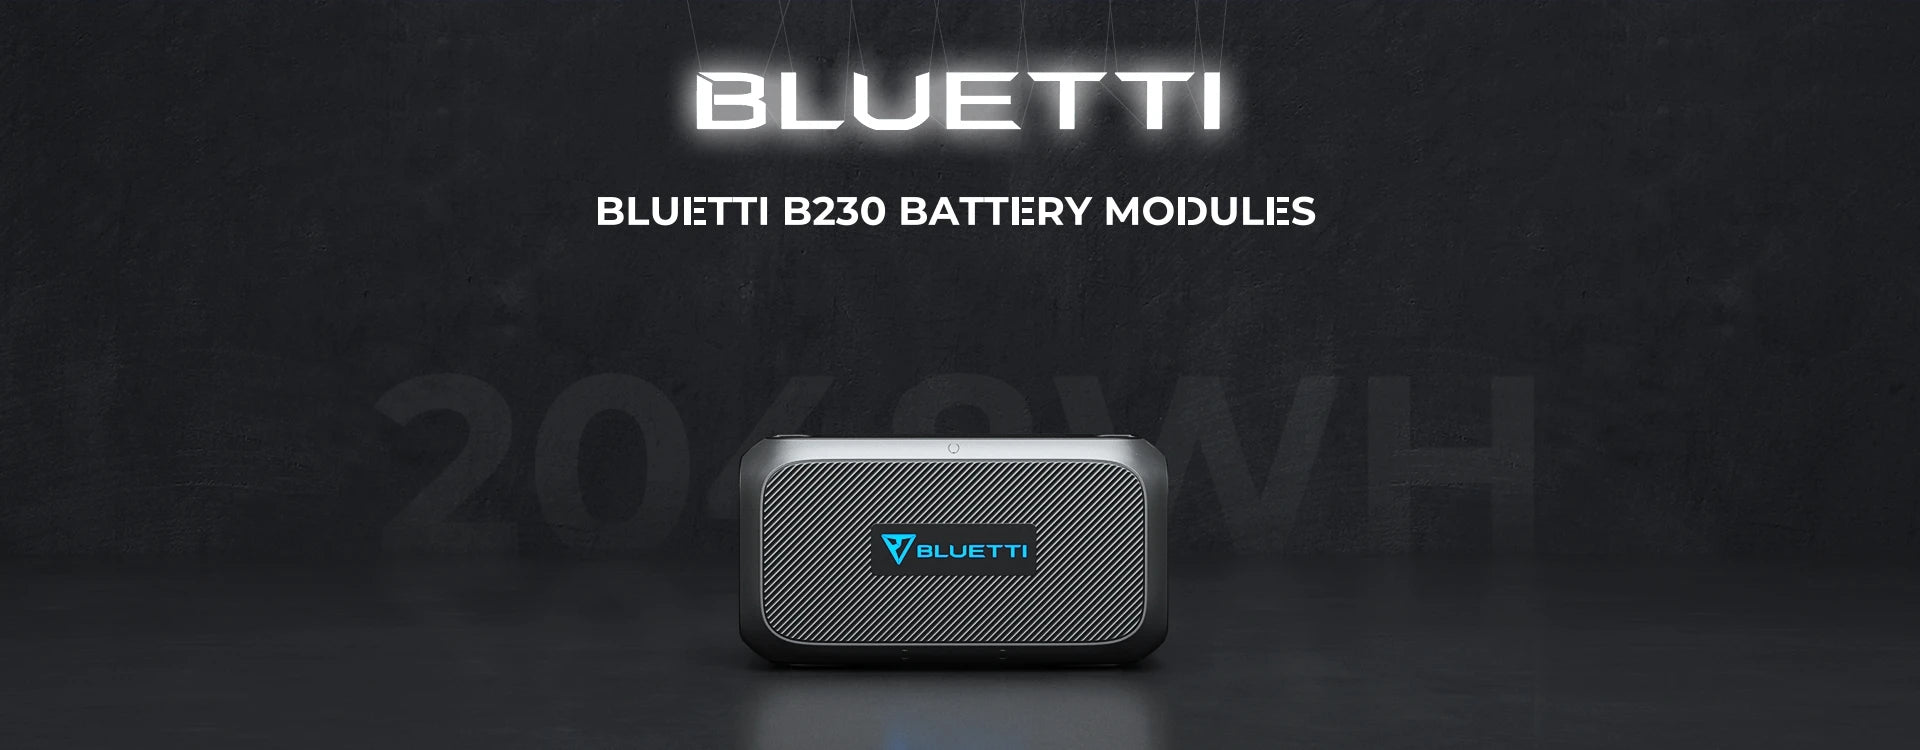 bateria de expansion bluetti b230